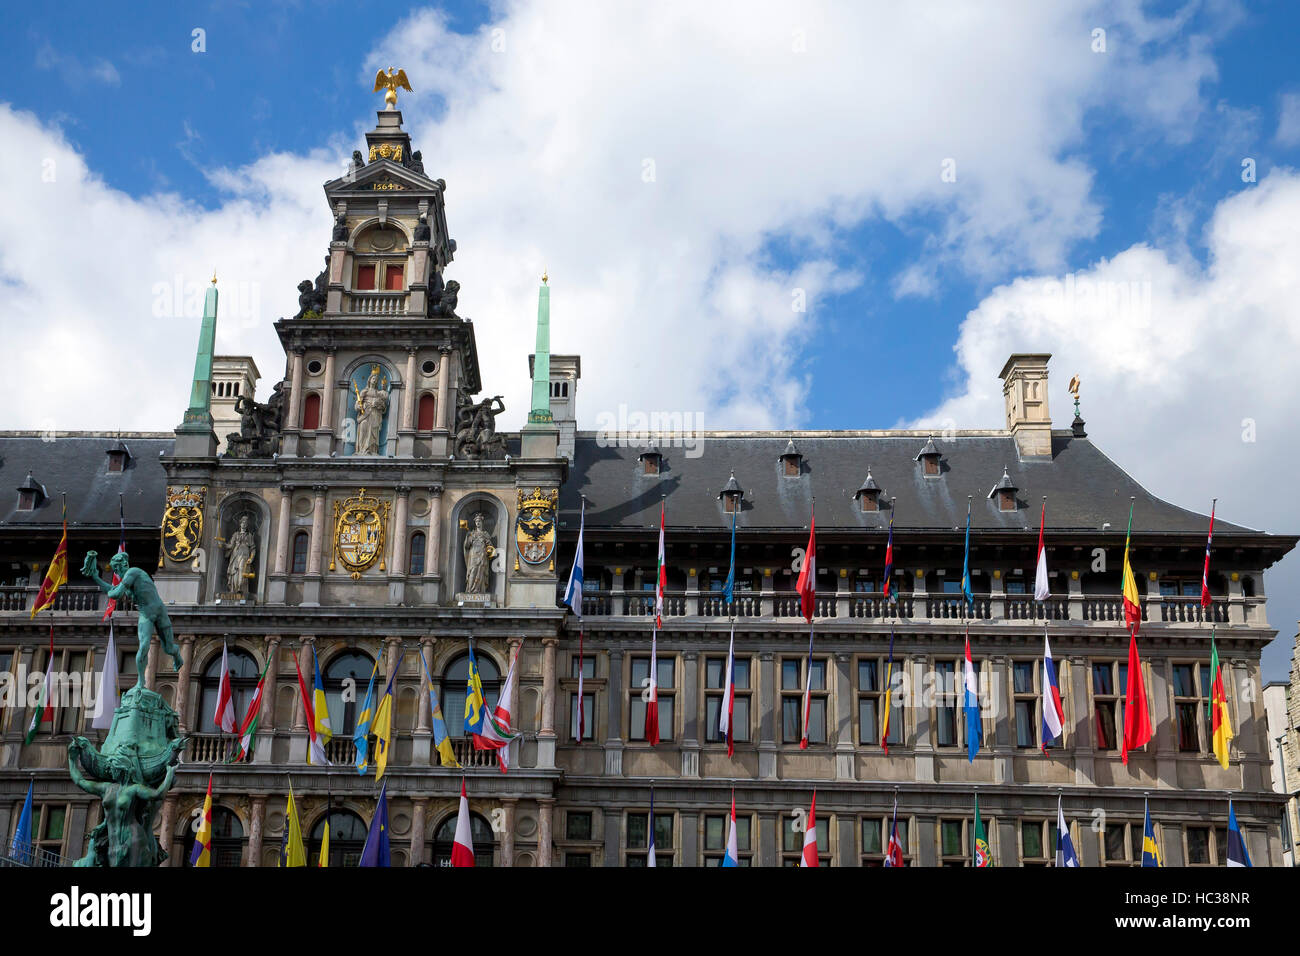 Stadhuis, ou hôtel de ville, centre ville, Anvers, Belgique, Europe Banque D'Images